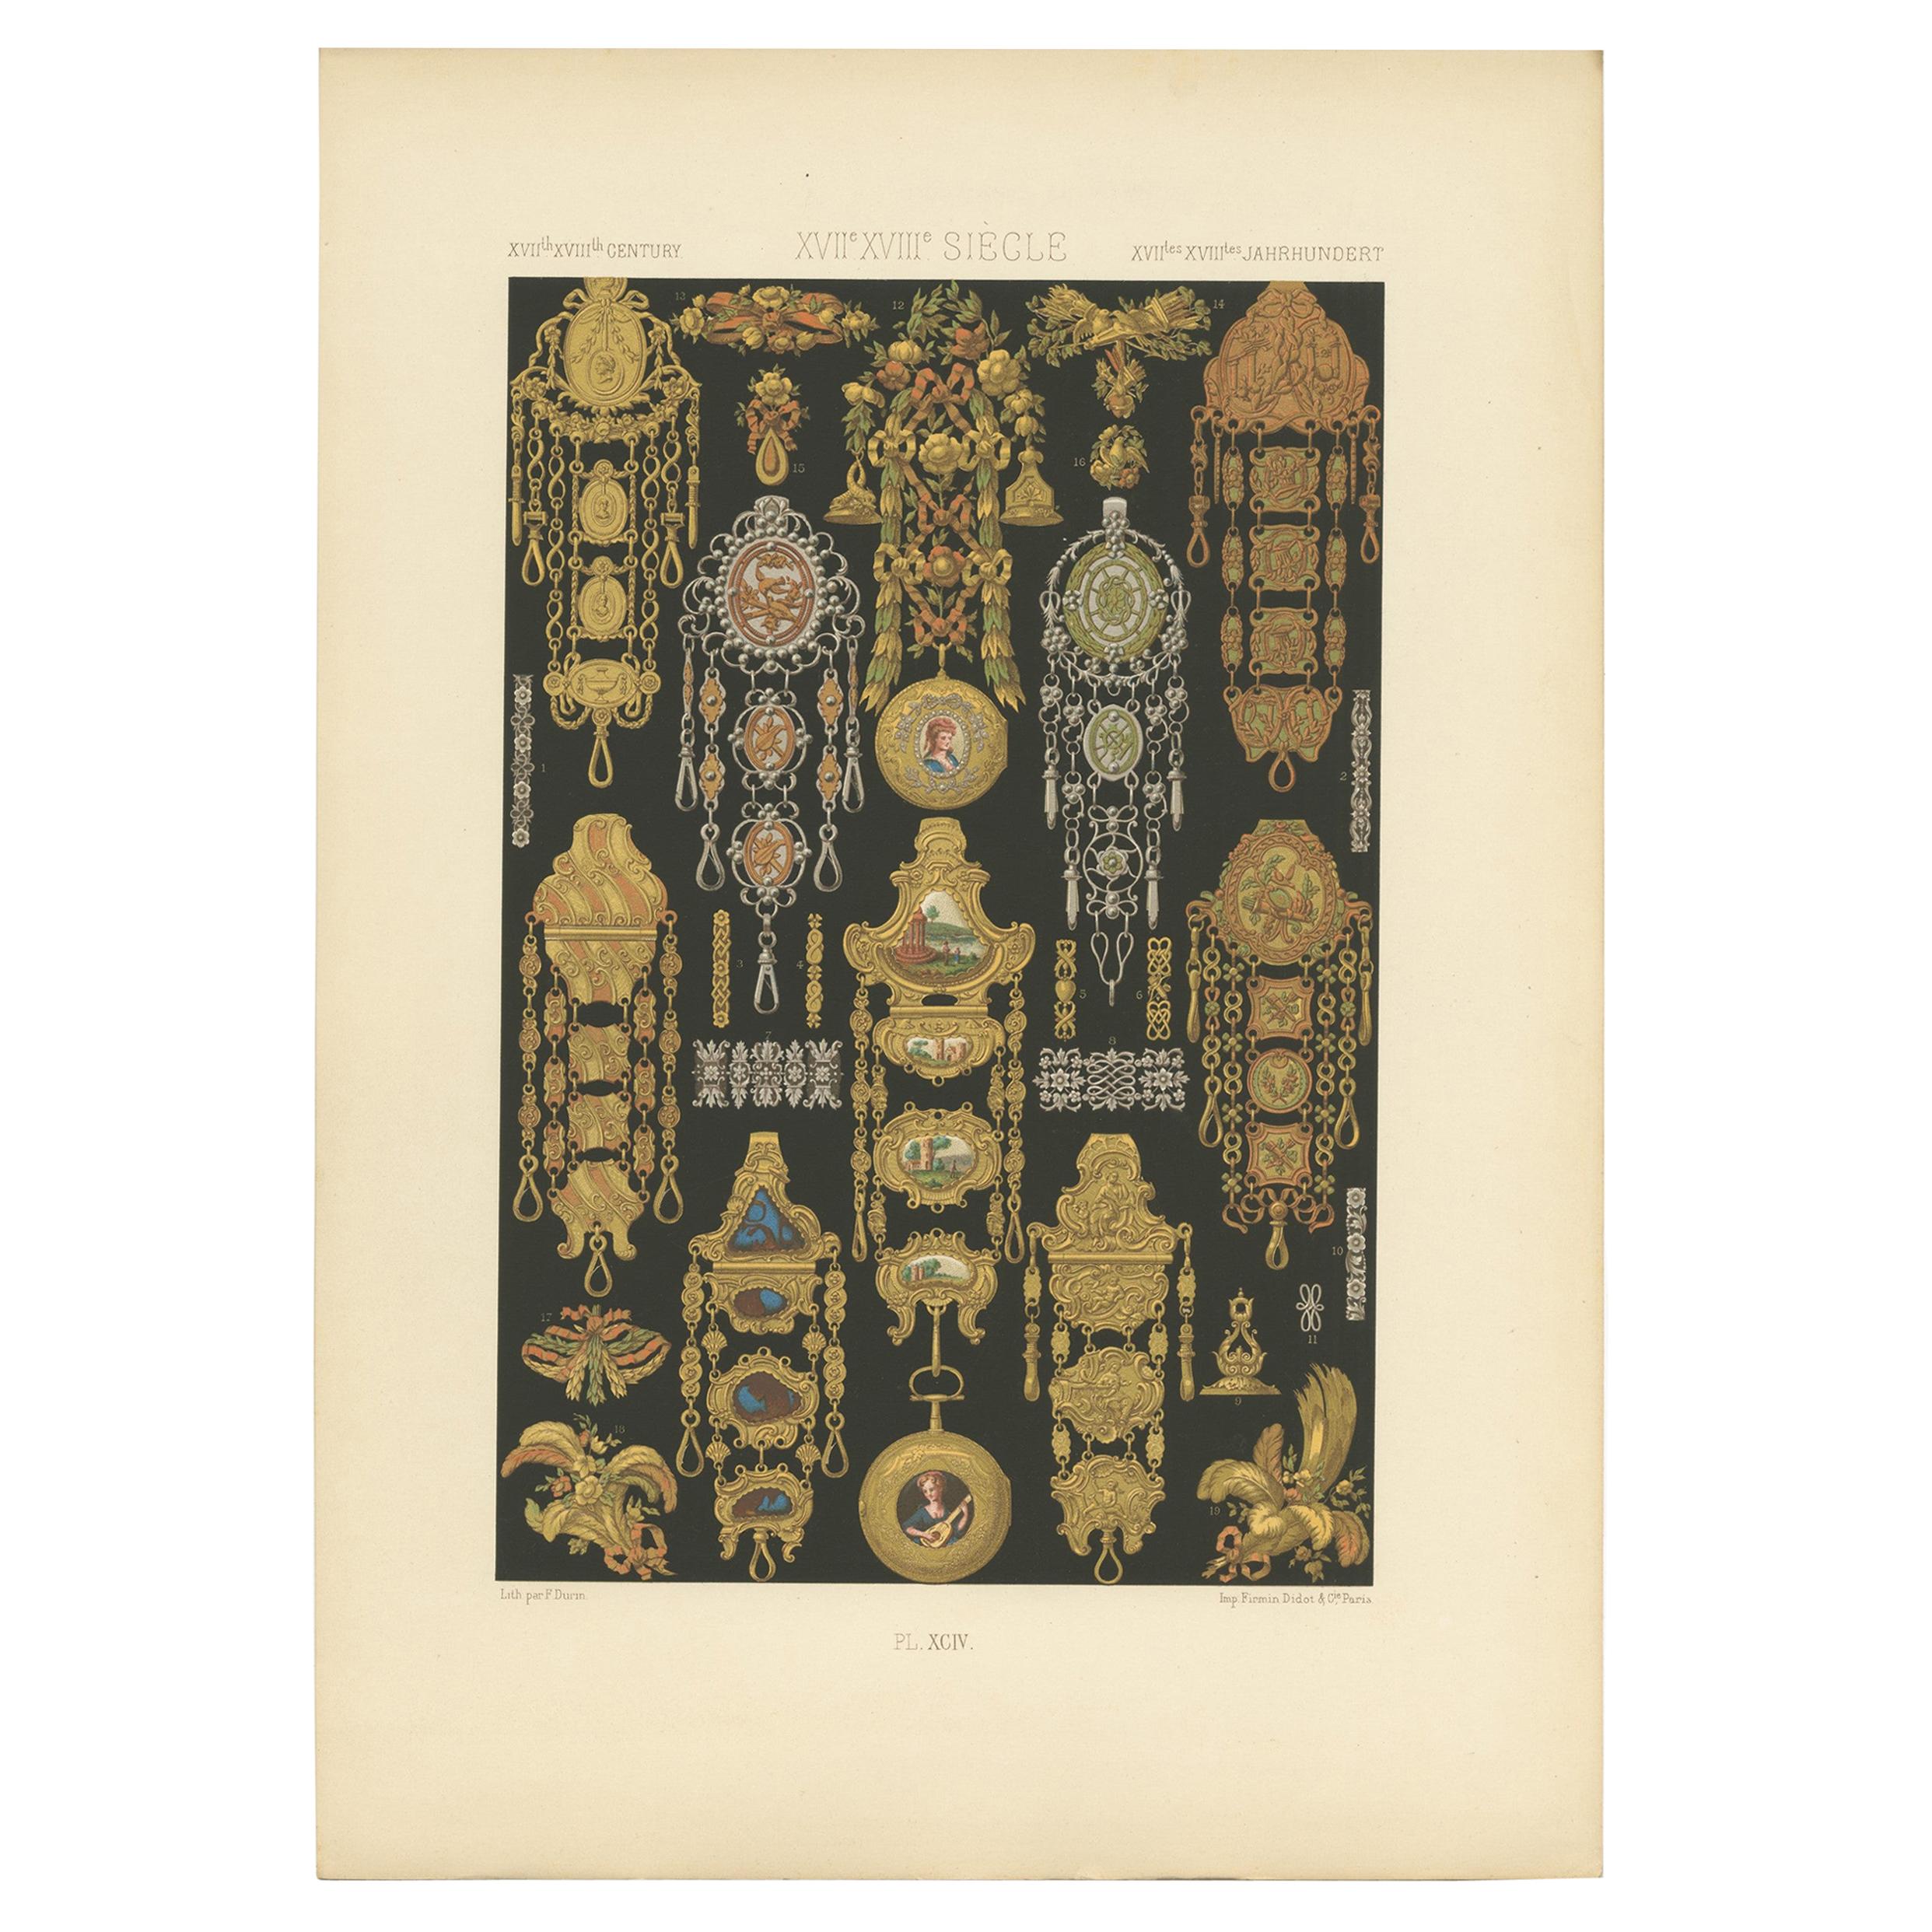 Pl. 94 Antique Print of XVIIth, XVIIIth Century Ornaments by Racinet (c.1890)